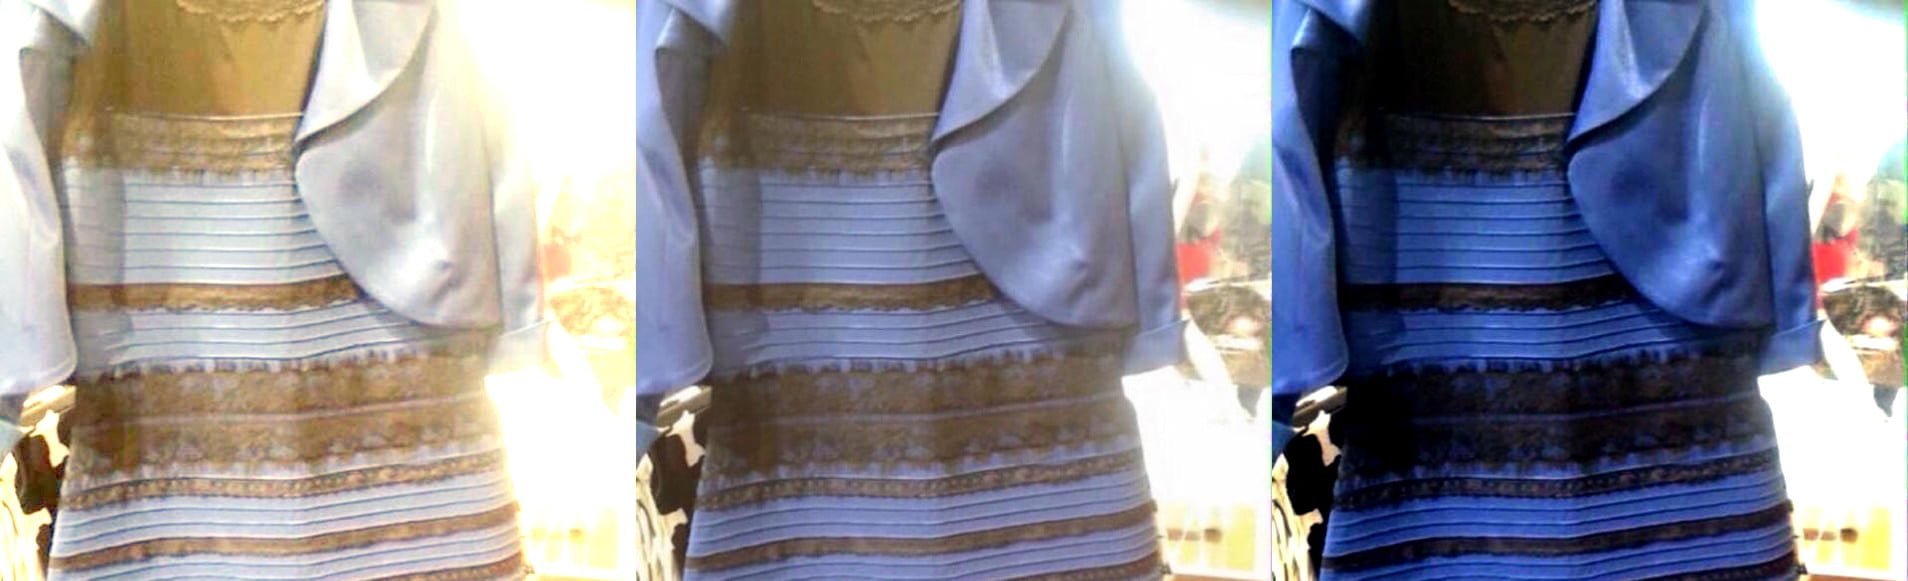 Загадка про цвет платья